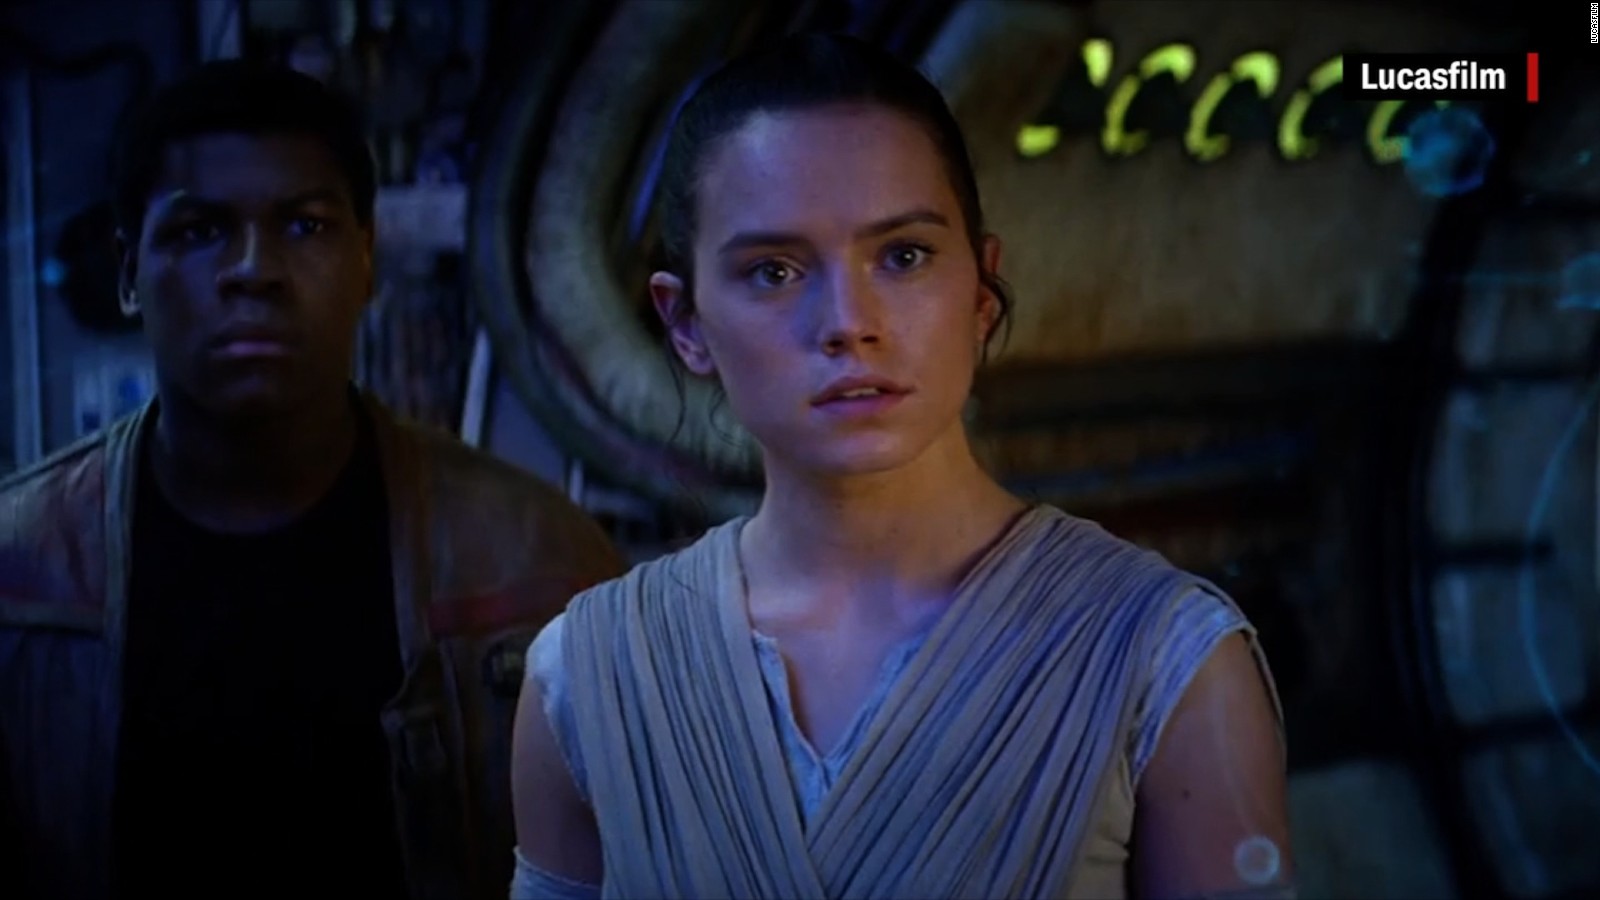 'Star Wars' trailer reveals new footage CNN Video